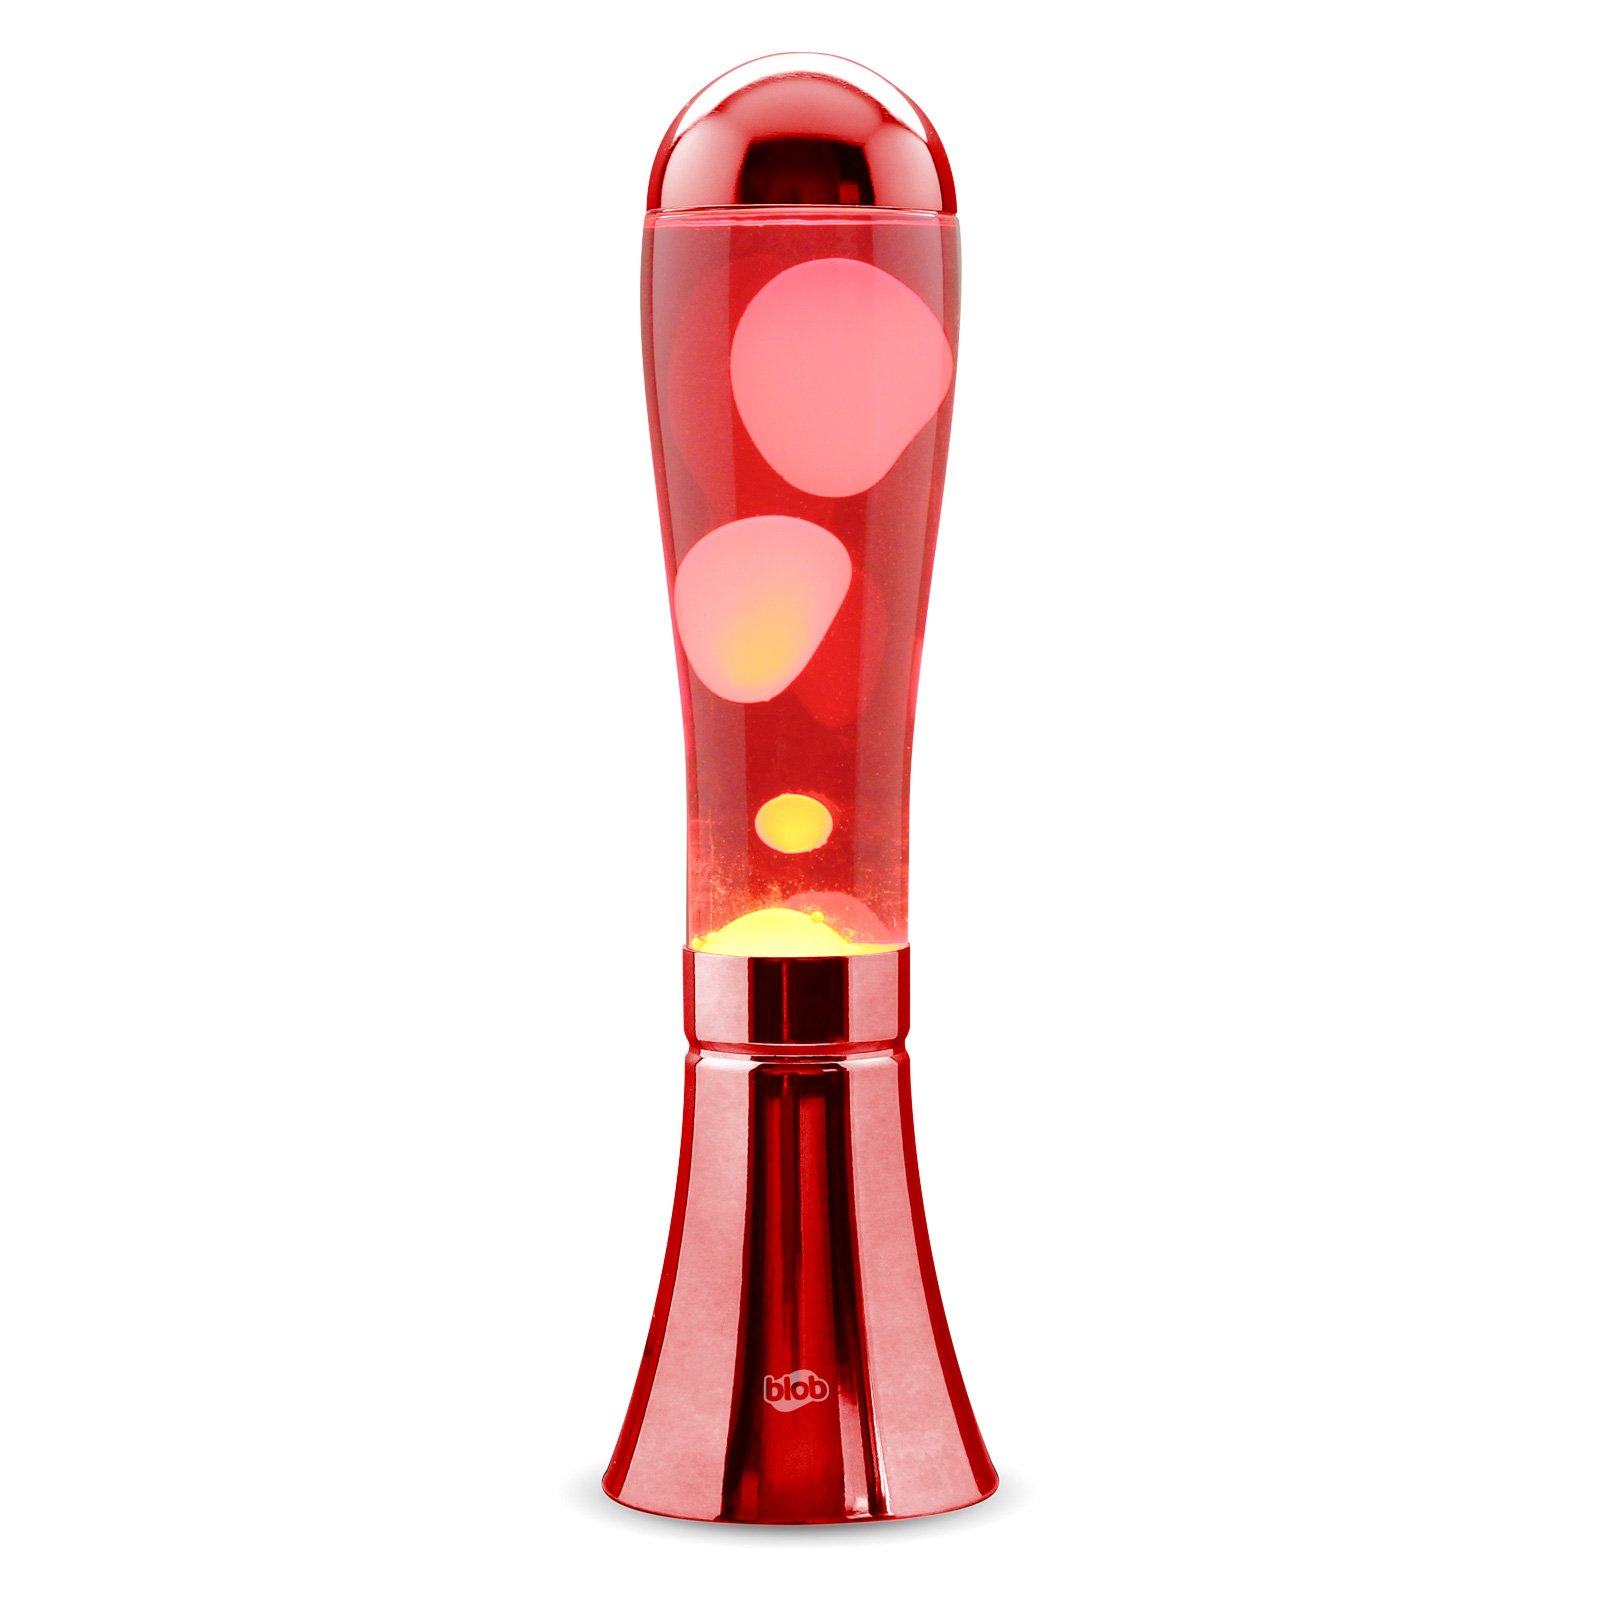 Image of BIG BLOB Blob Lamps Lava Lamp - Metallic Red Base - White/Red